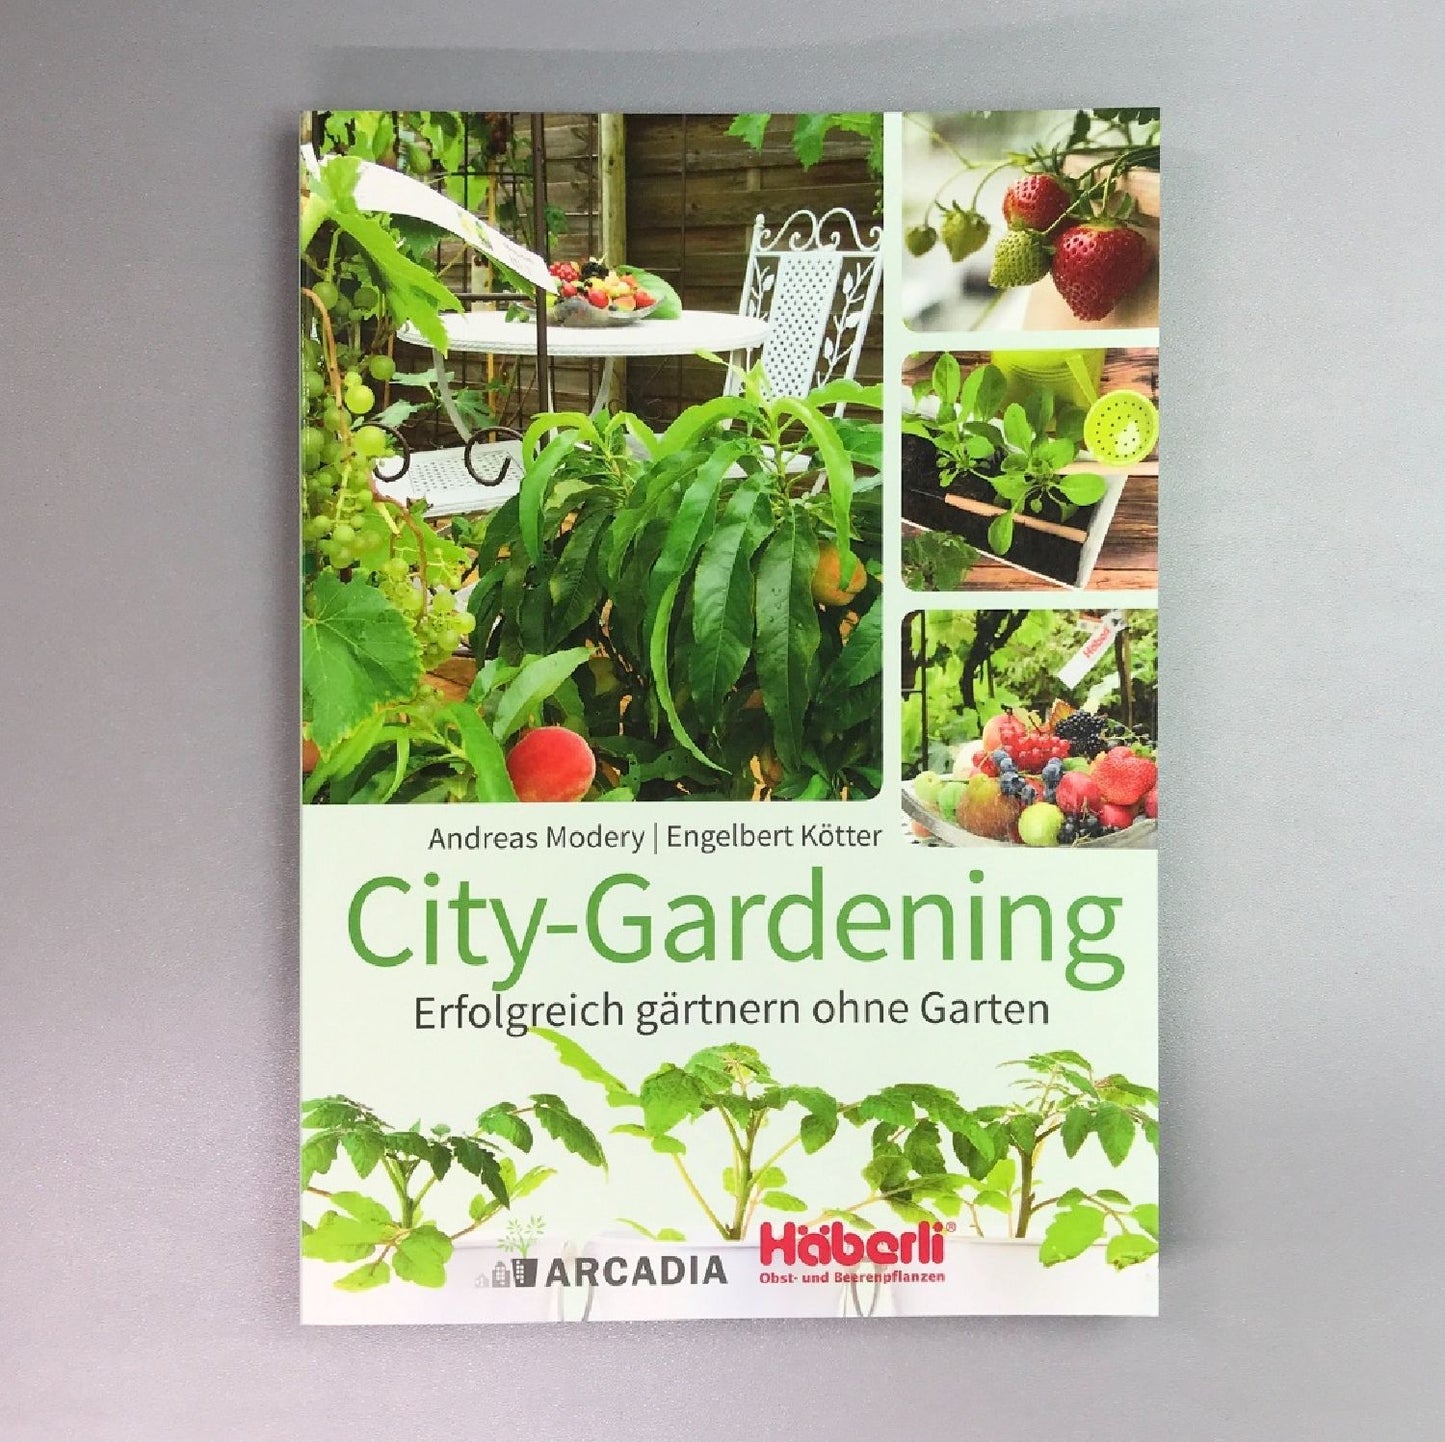 City-Gardening (Erfolgreich gärtnern ohne Garten)